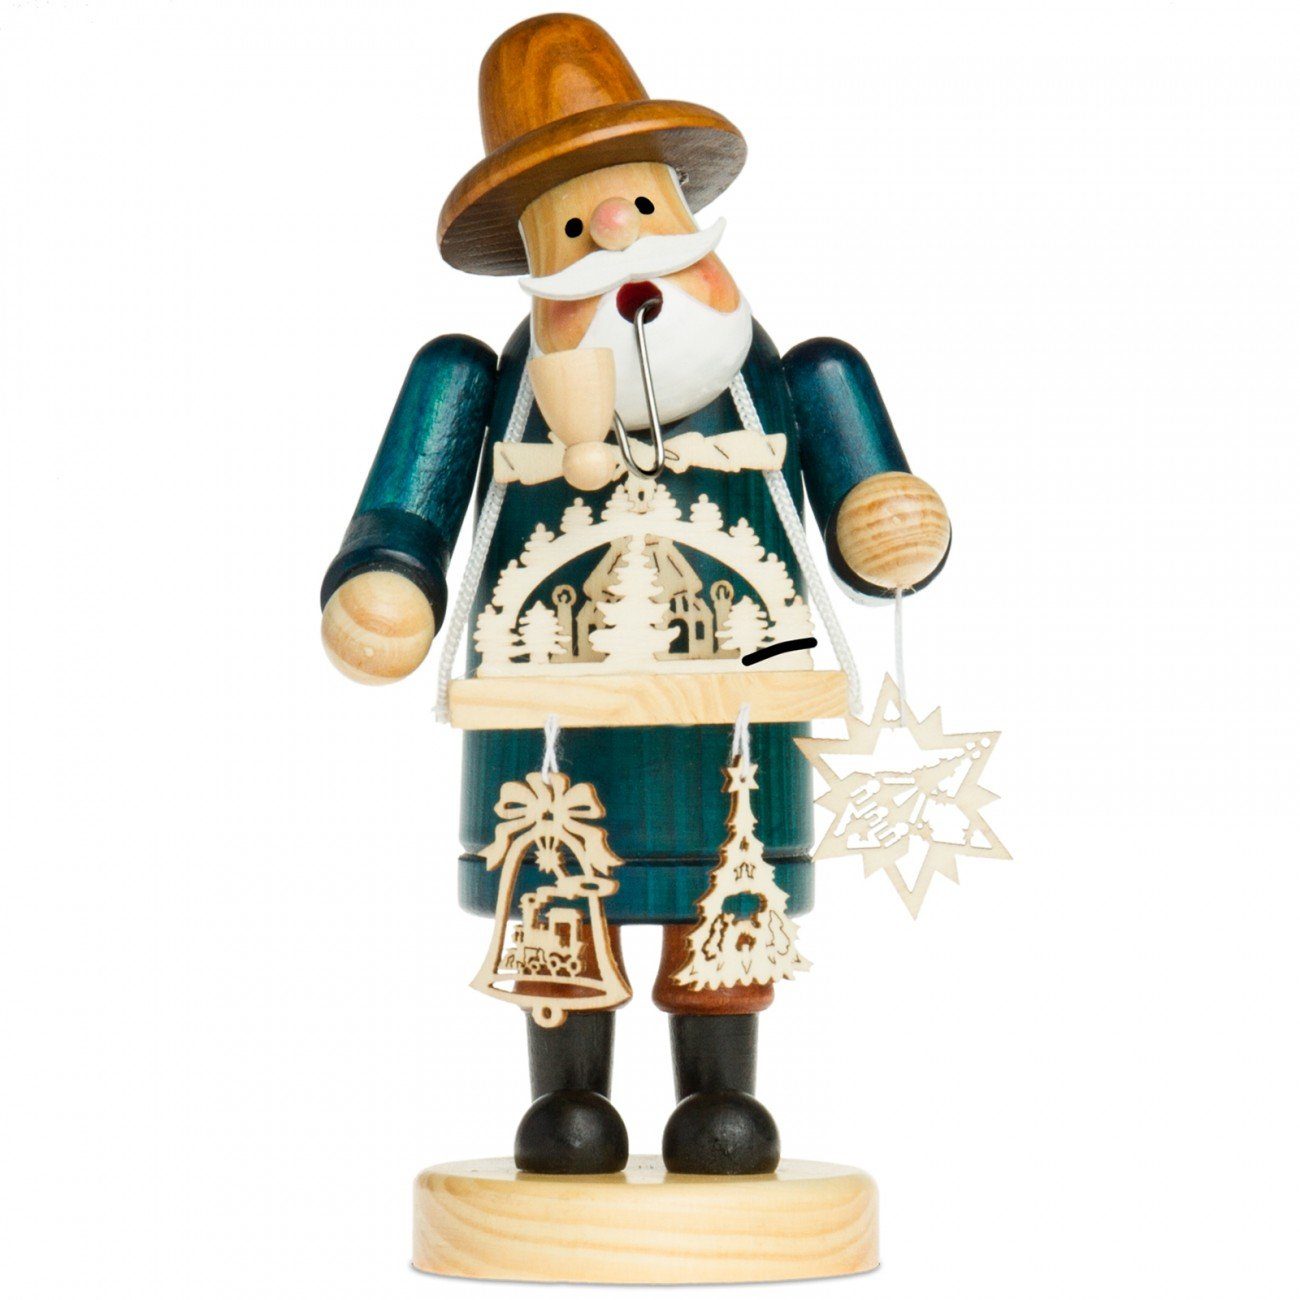 SIKORA Weihnachtsfigur RM-A Räuchermännchen aus Holz 3 Größen verschiedene Motive